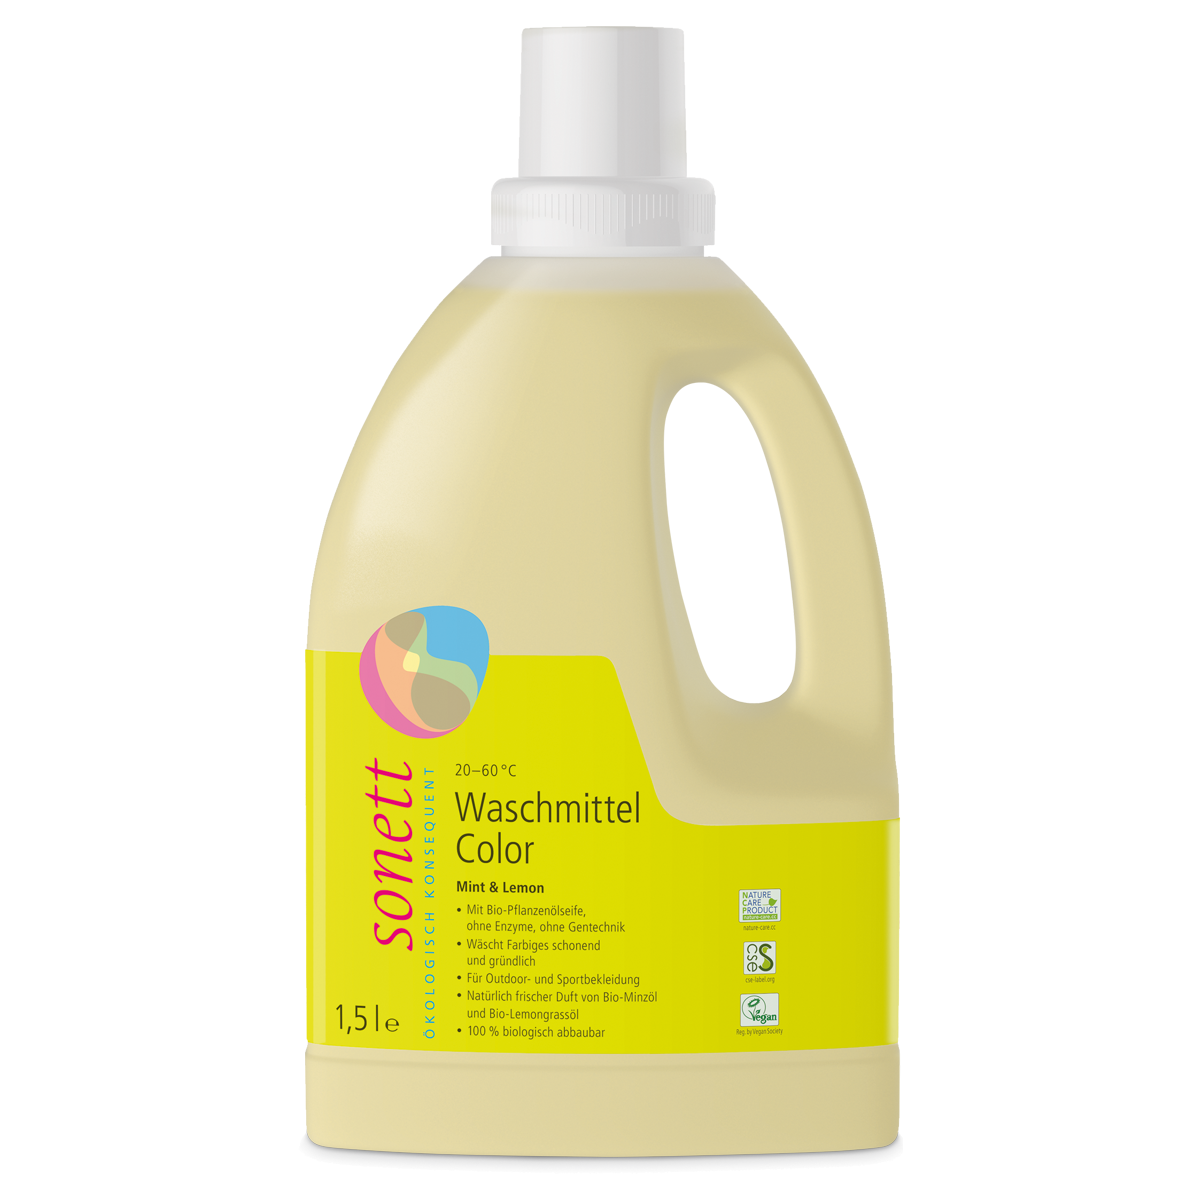 Sonett Waschmittel Color 20°-60°C Mint & Lemon 1.5 Liter